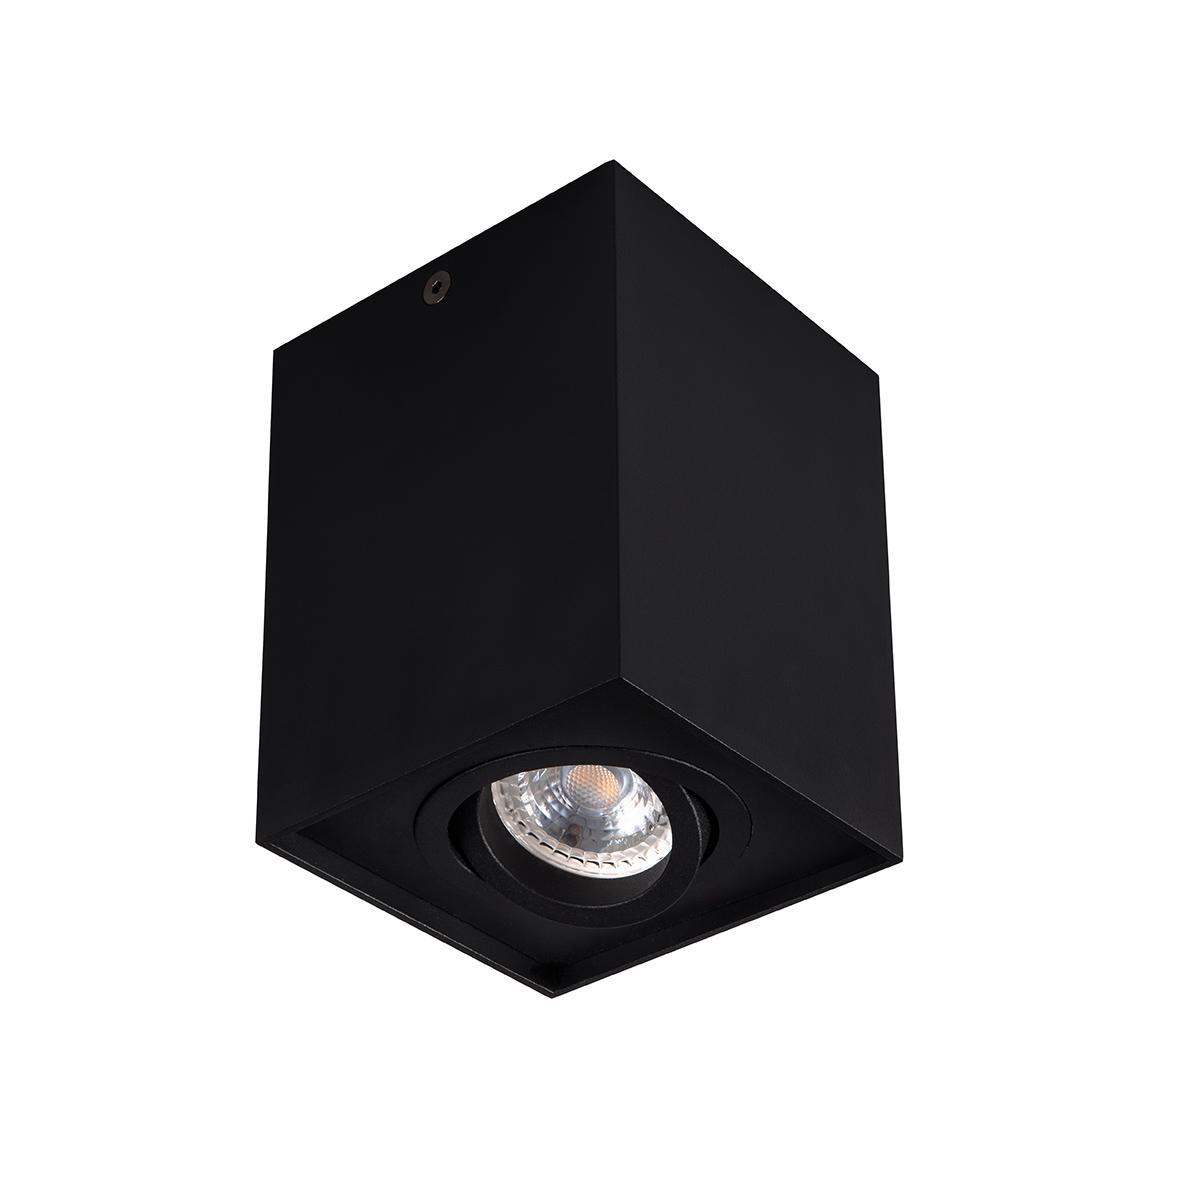 Накладной точечный светильник Kanlux GORD DLP 50-B 25471 накладной точечный светильник kanlux blurro gu10 co b 32950